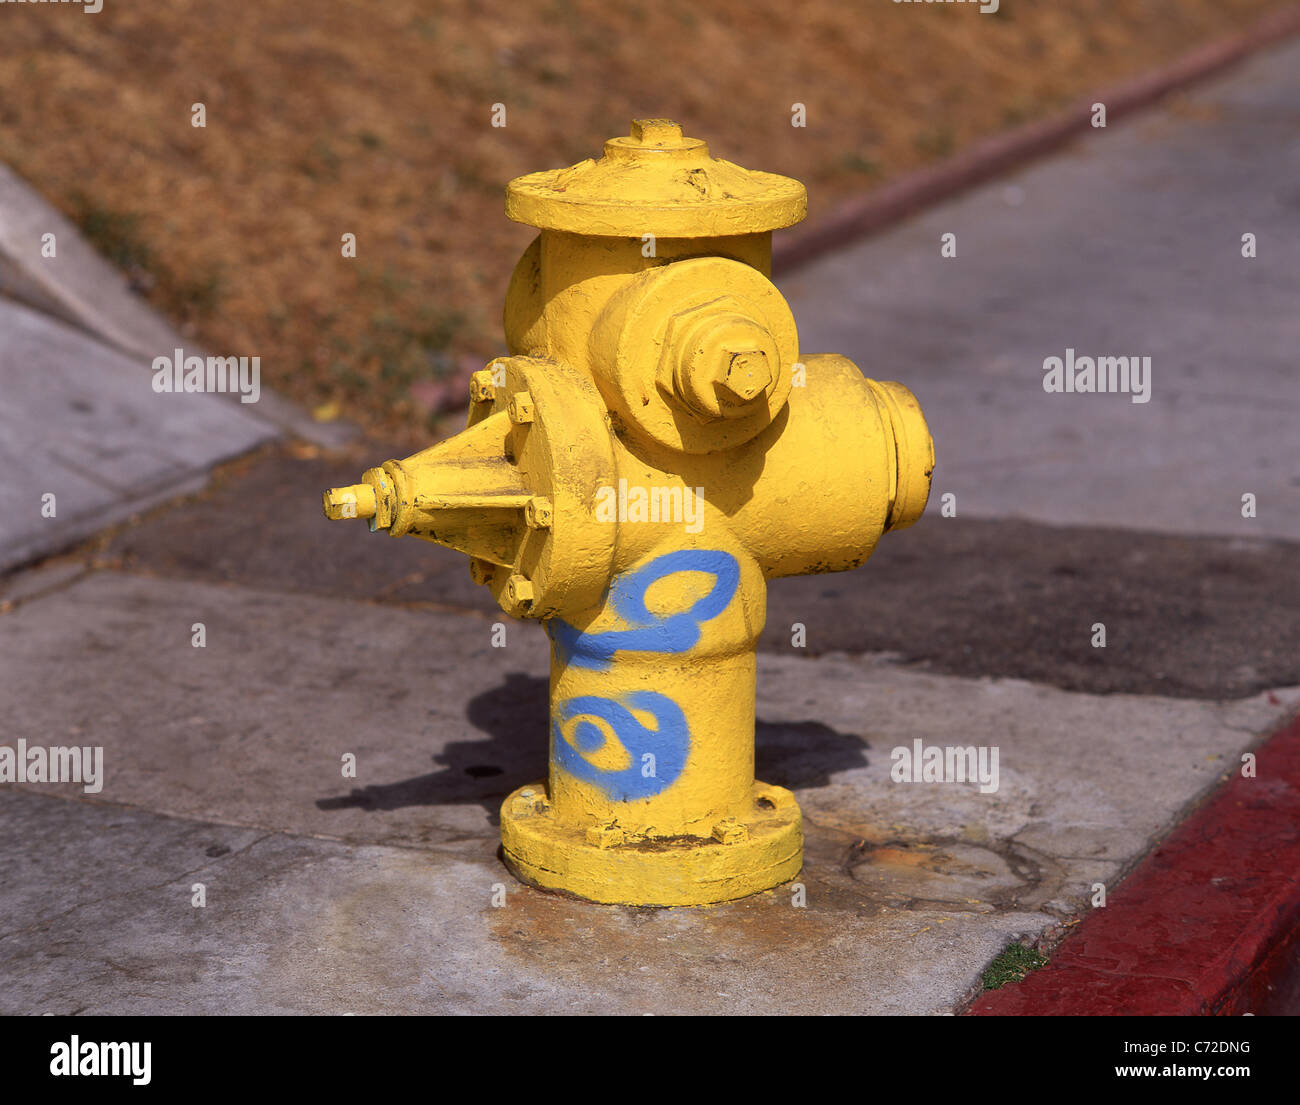 Giallo idrante di fuoco sul marciapiede, San Francisco, California, Stati Uniti d'America Foto Stock